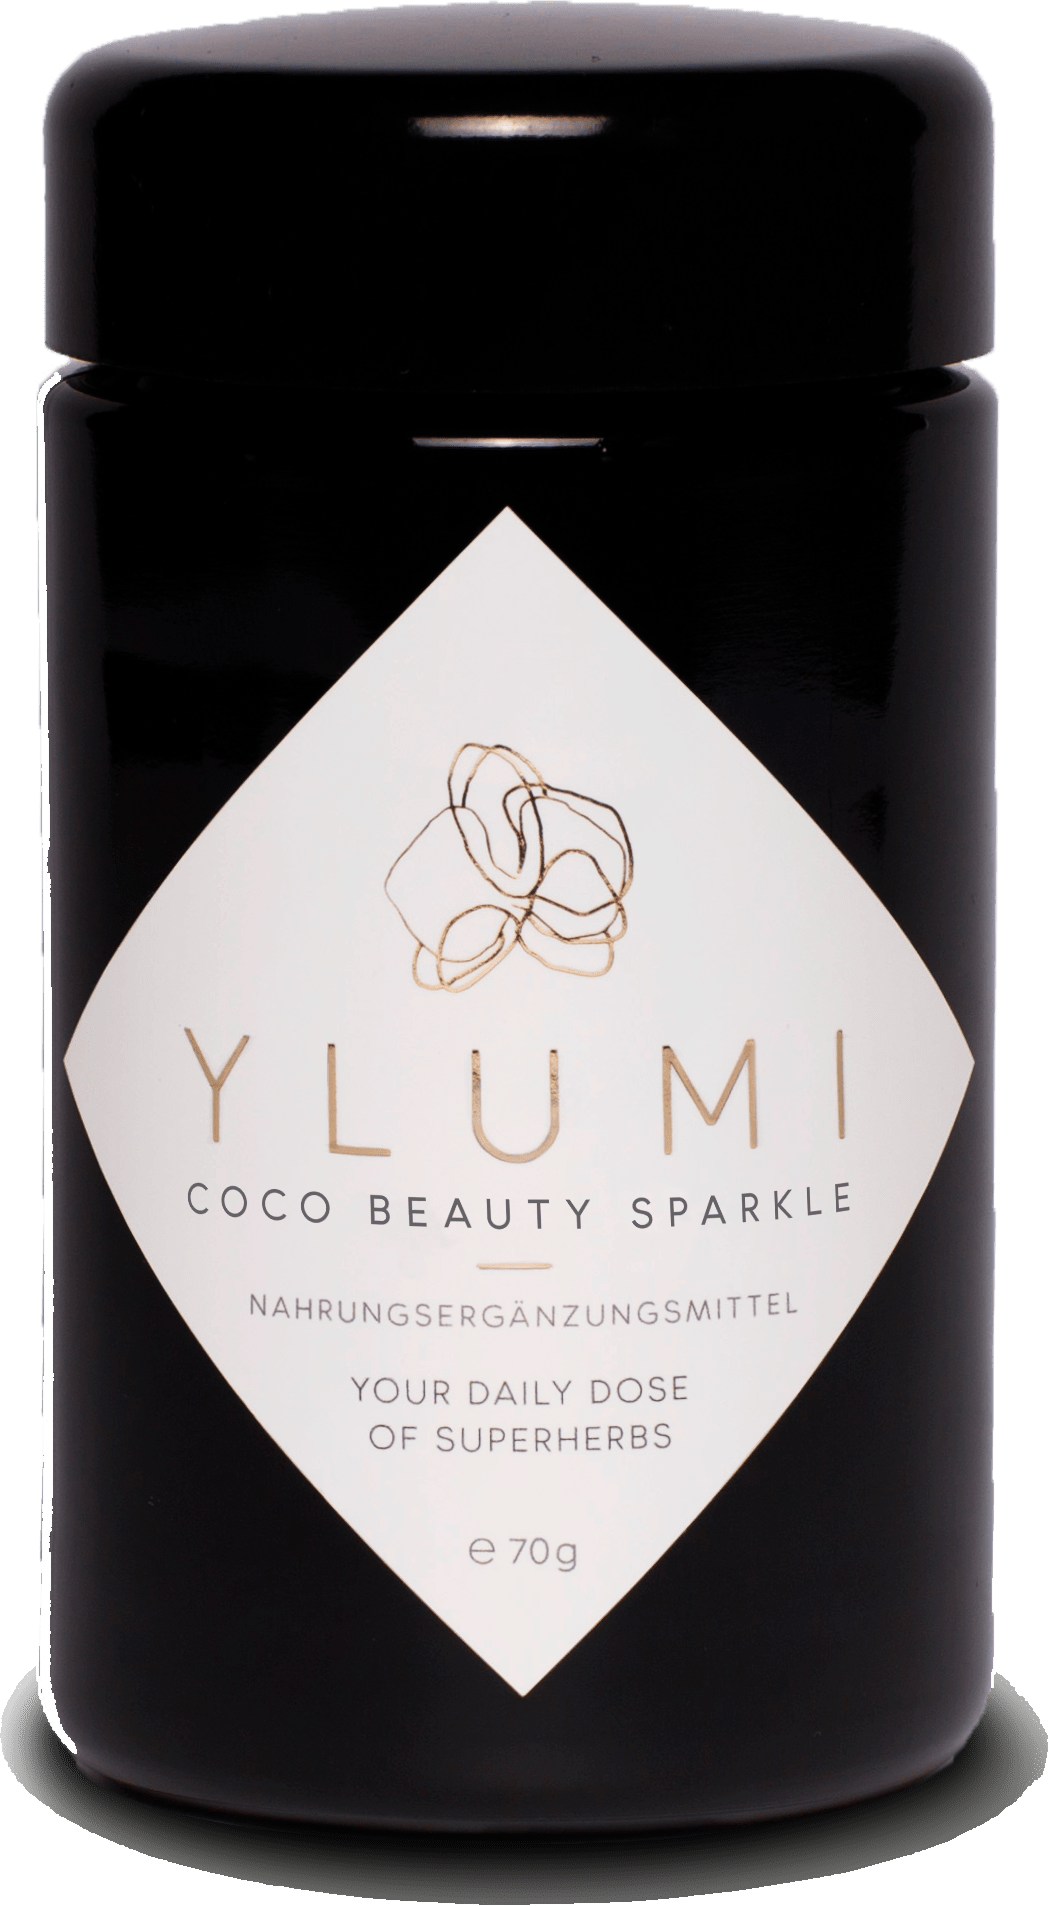 Ylumi Coco Beauty Sparkle ohne Hintergrund